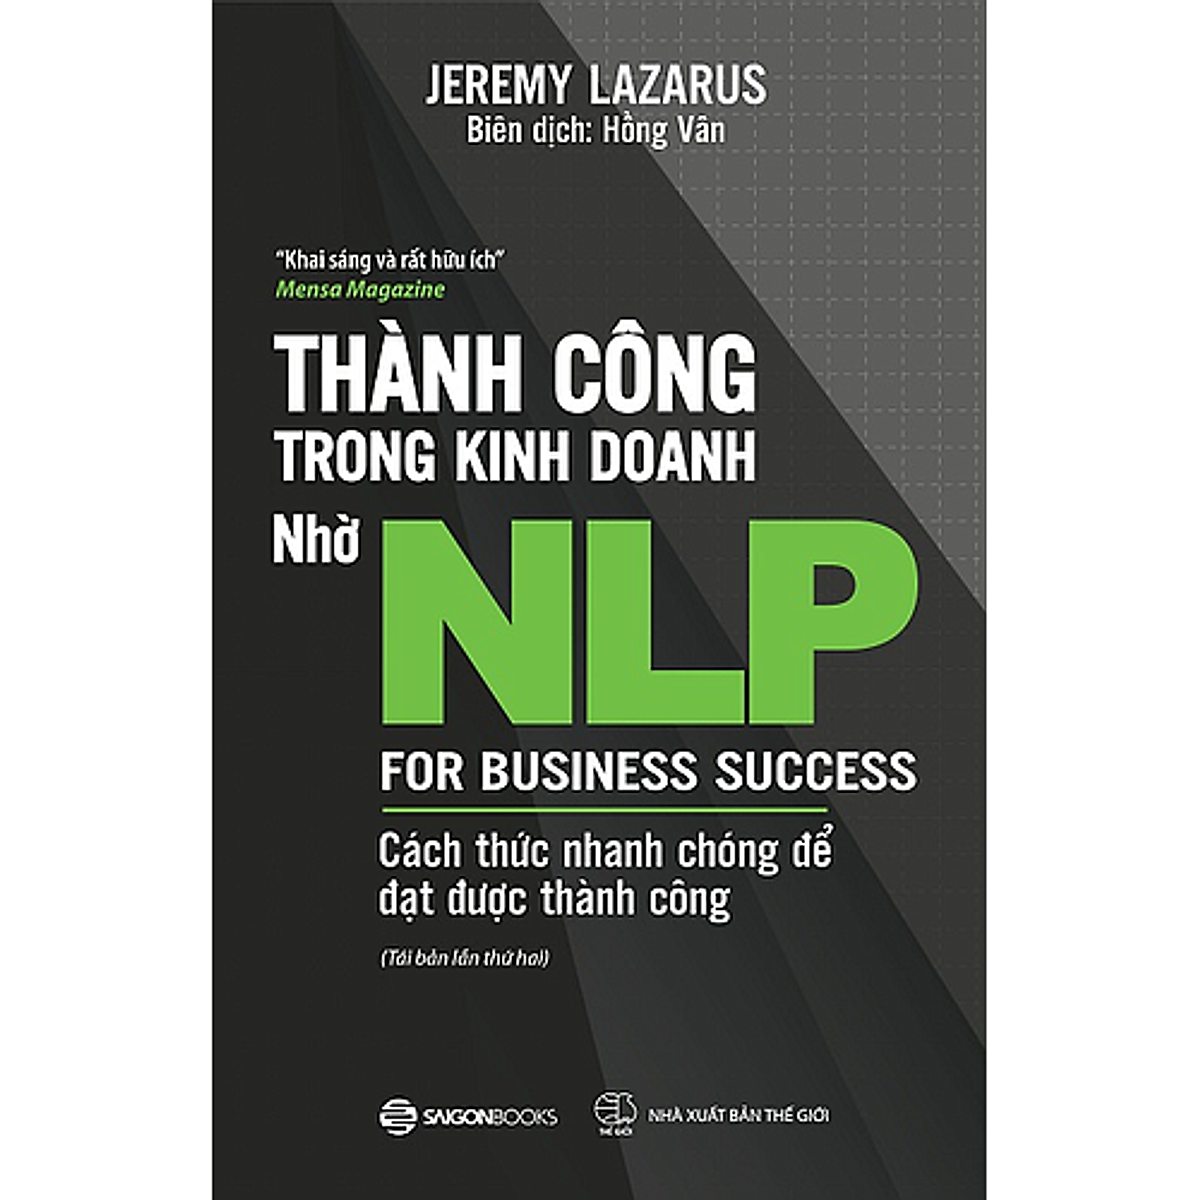 Thành công trong kinh doanh nhờ NLP - Cách thức nhanh chóng để đạt được thành công (For Business Success) - Tác giả Jeremy Lazarus 